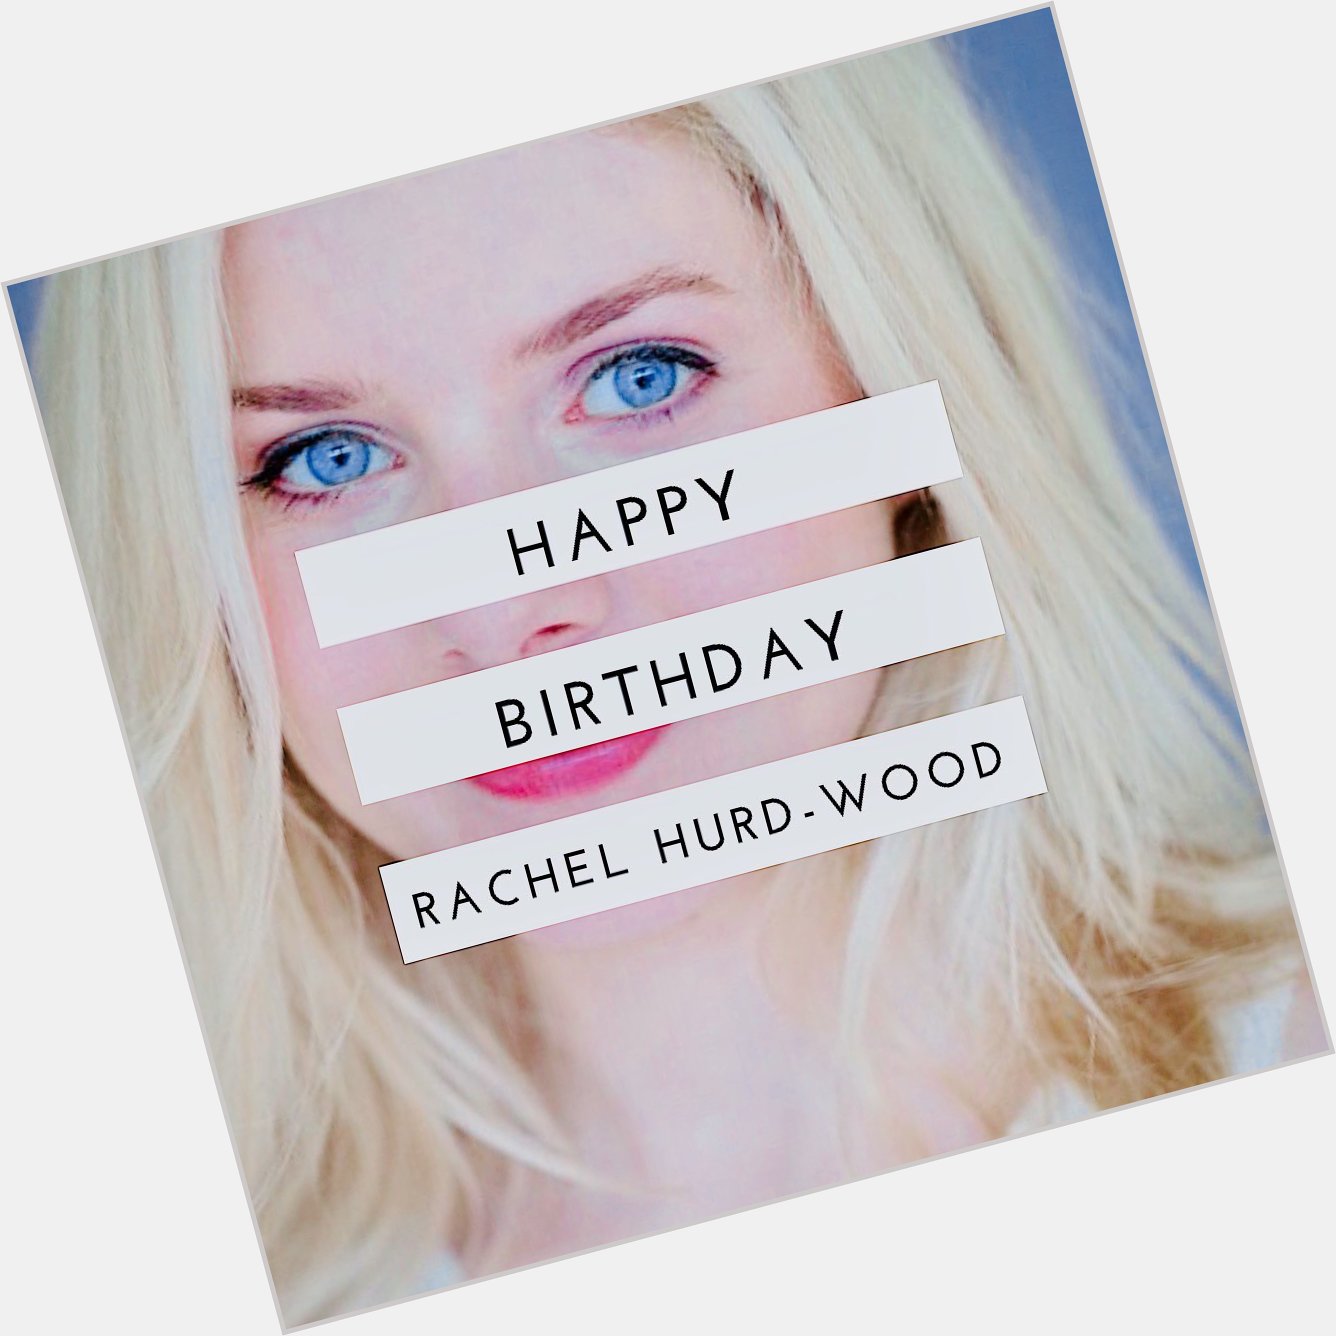 Happy birthday to our beloved Rachel Hurd-Wood   